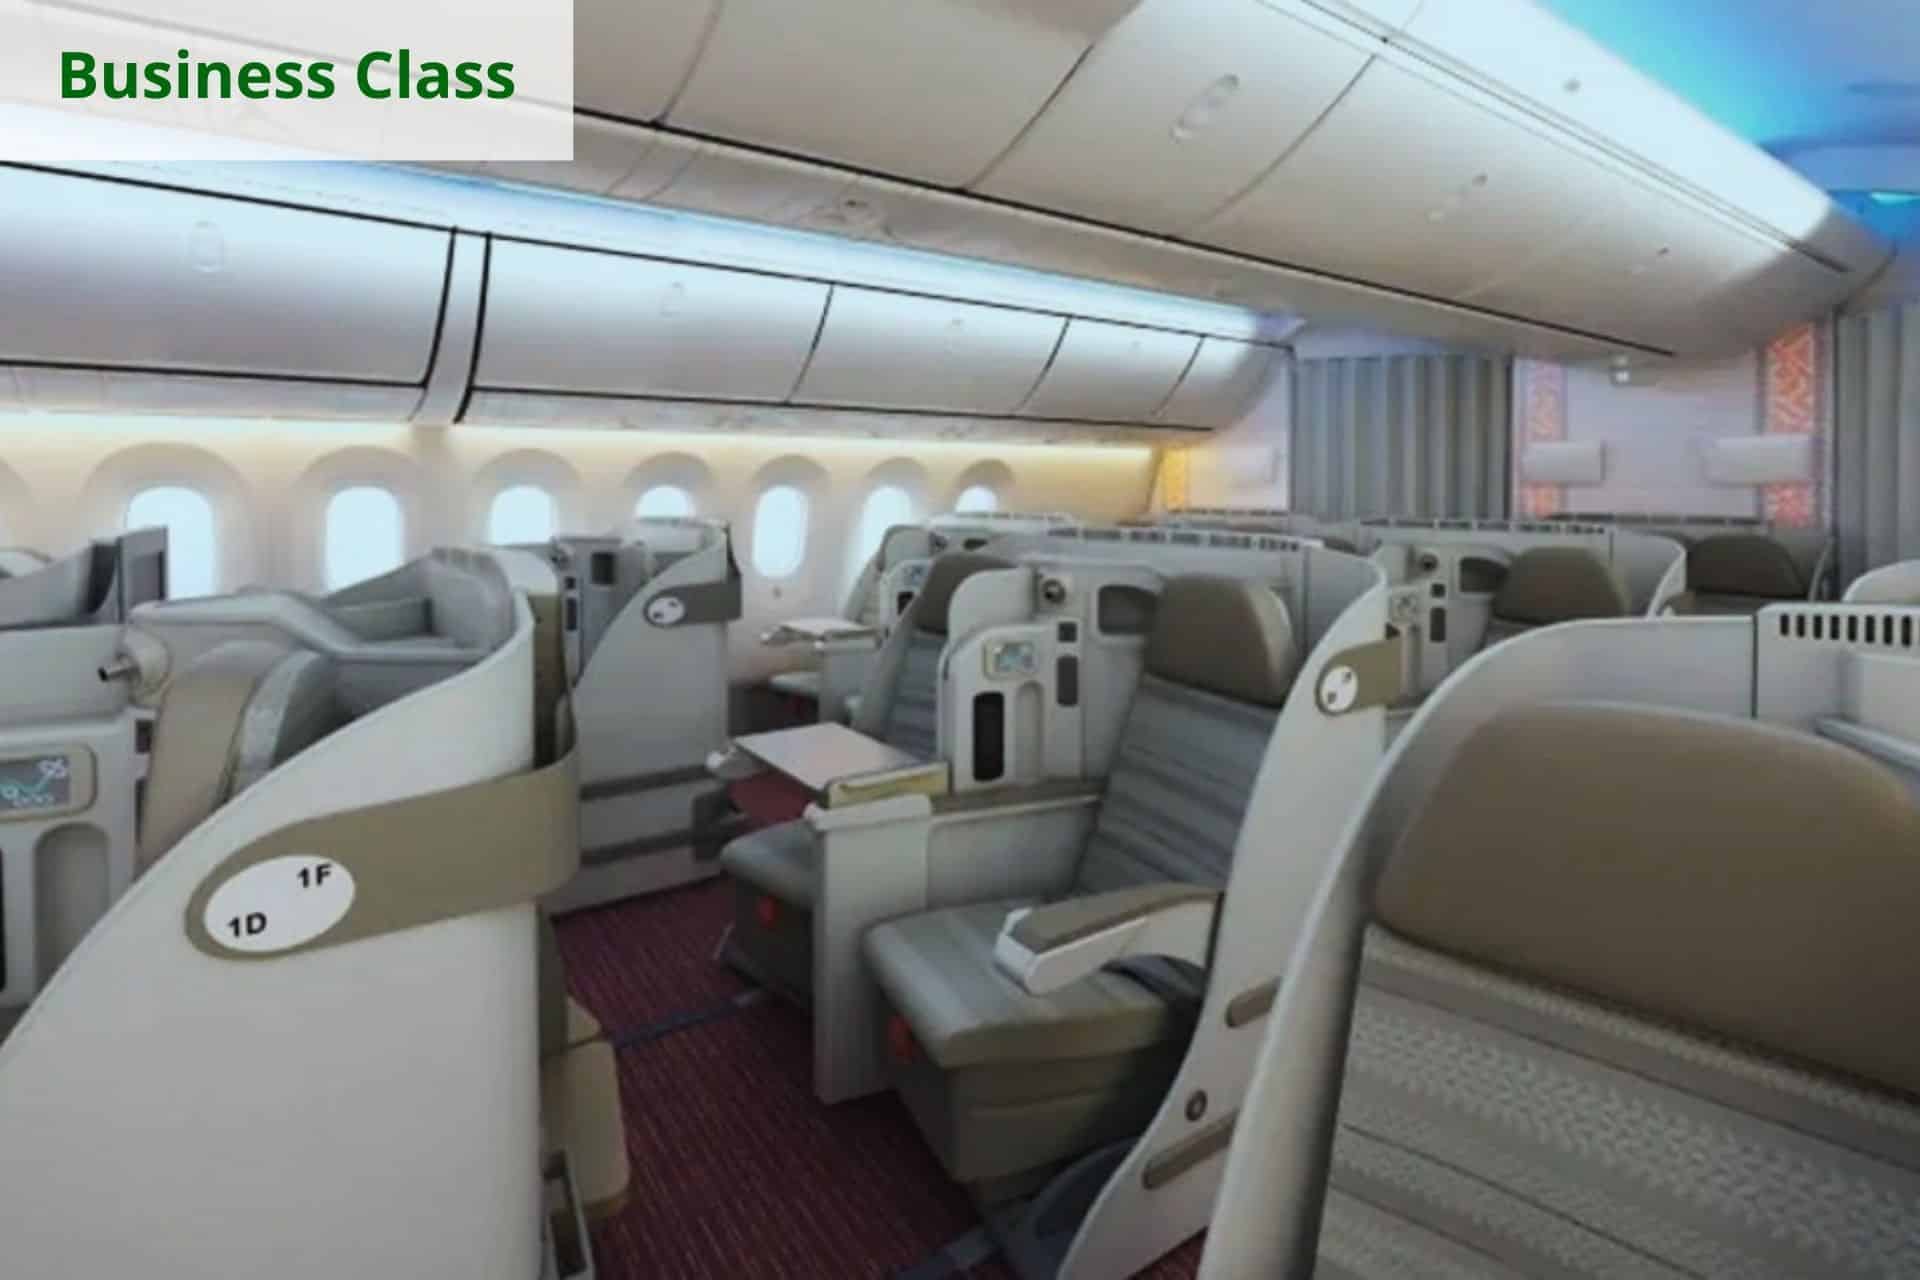 Biman Bangladesh Airlines Business Class